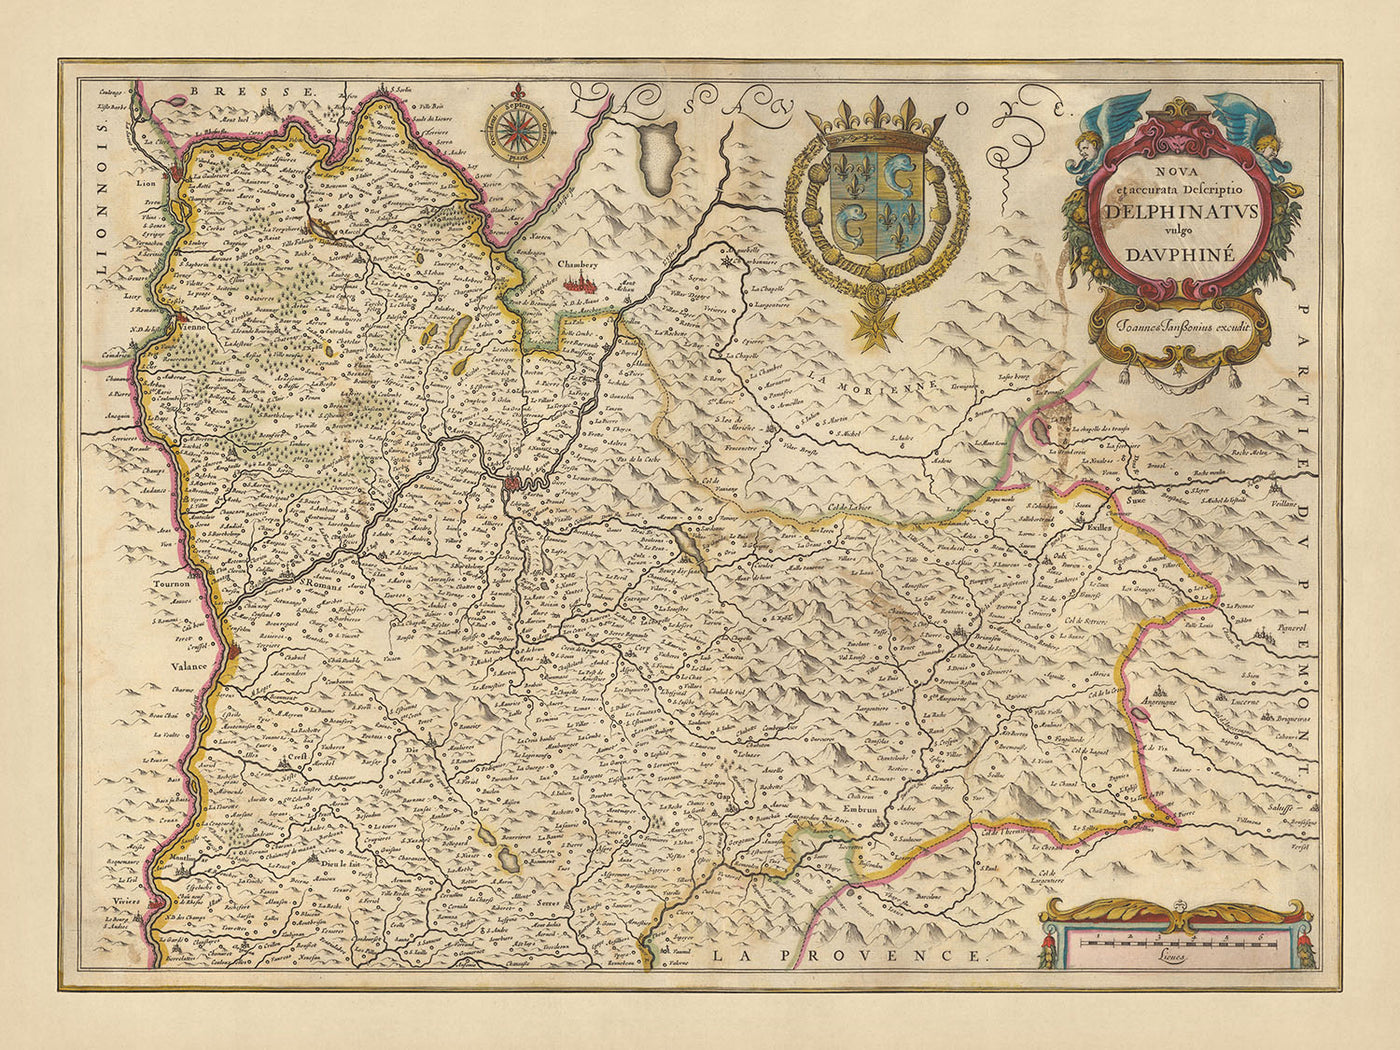 Mapa antiguo de la provincia de Dauphiné por Visscher, 1690: Chambéry, Grenoble, Lyon, Valence, Parque Nacional de la Vanoise